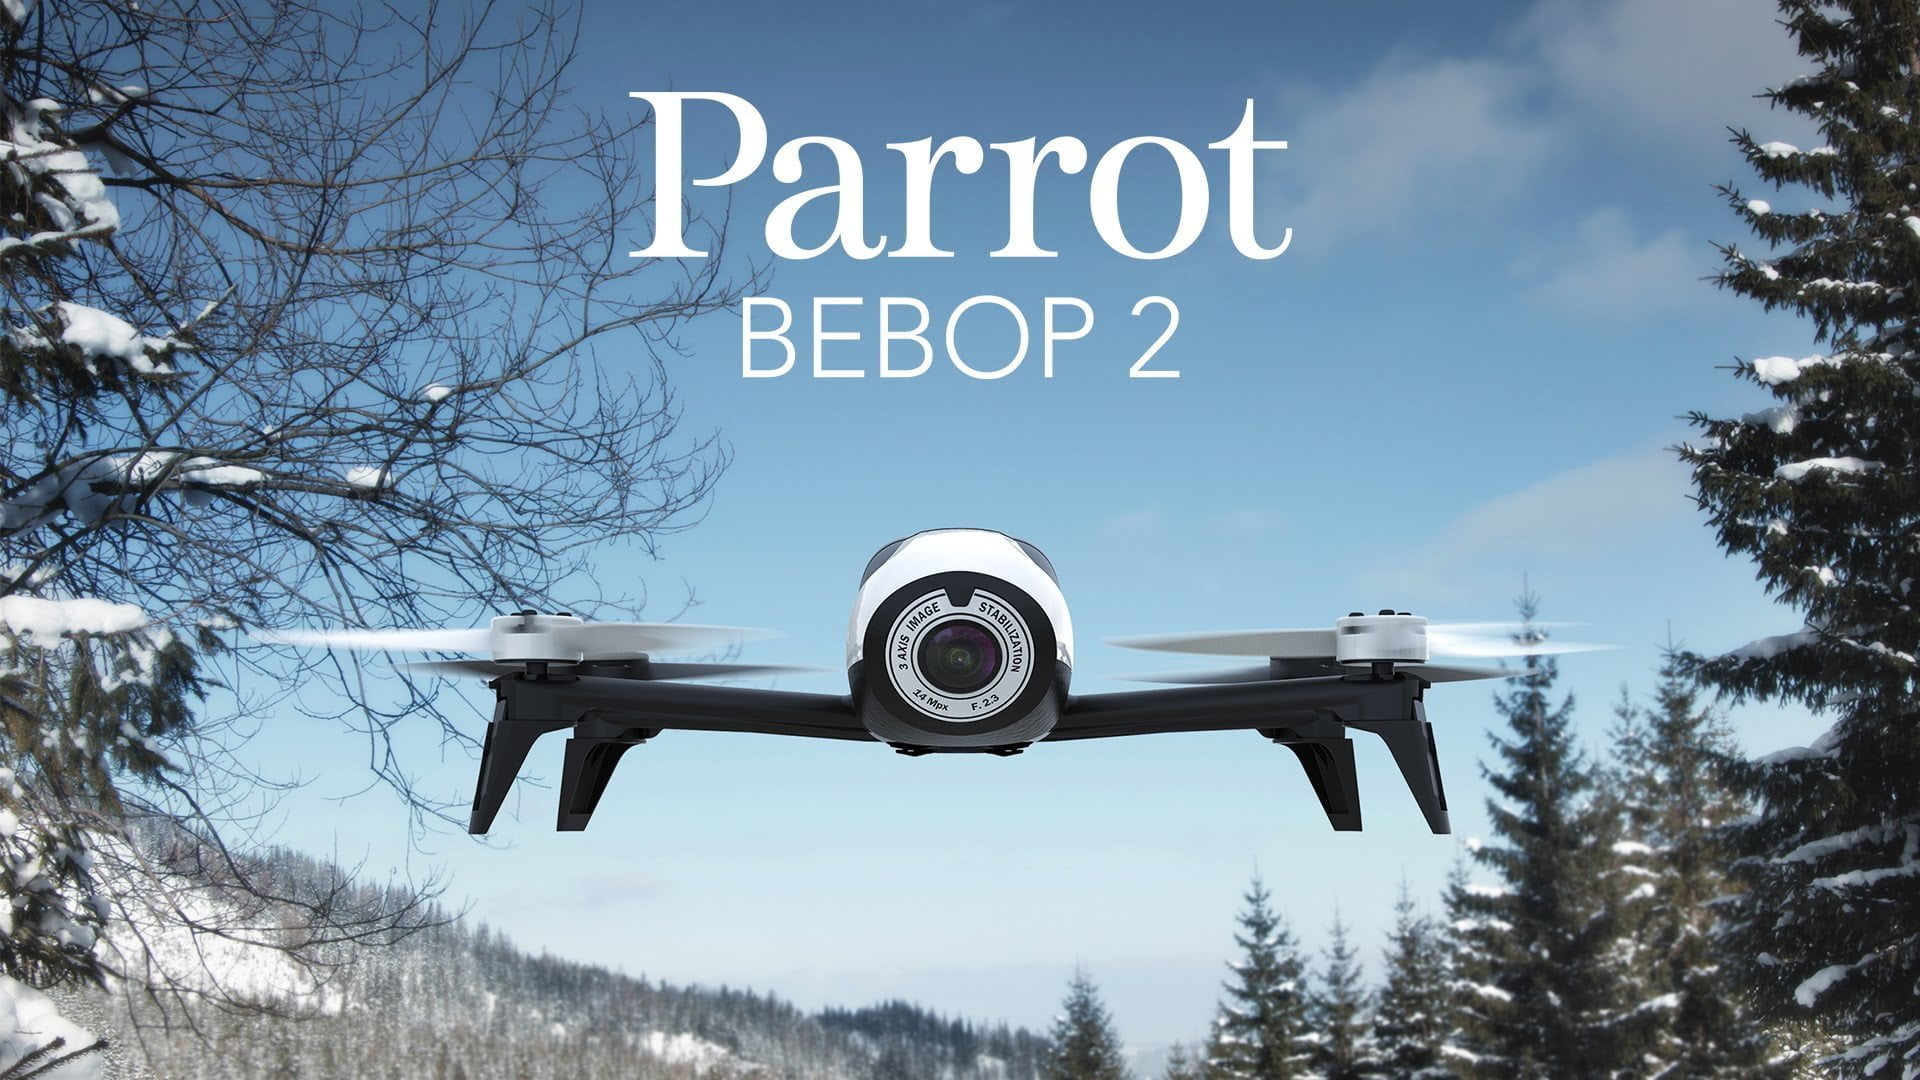 Nieuws: Parrot Bebop 2 is er! 23